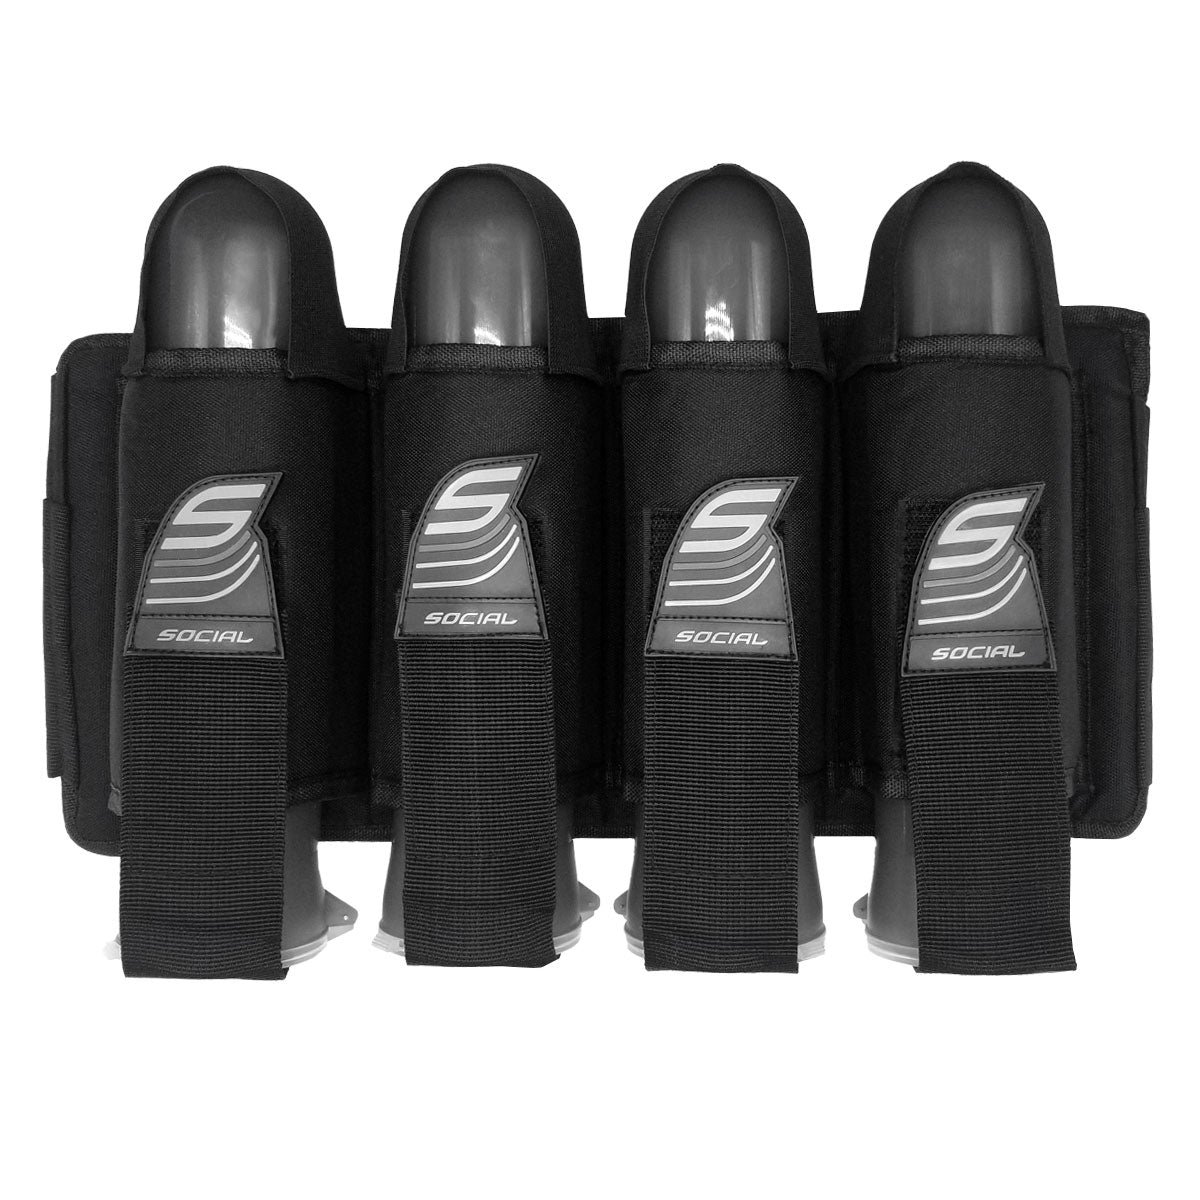 SMPL Pod Pack Harness, 4 Pod Holders Black